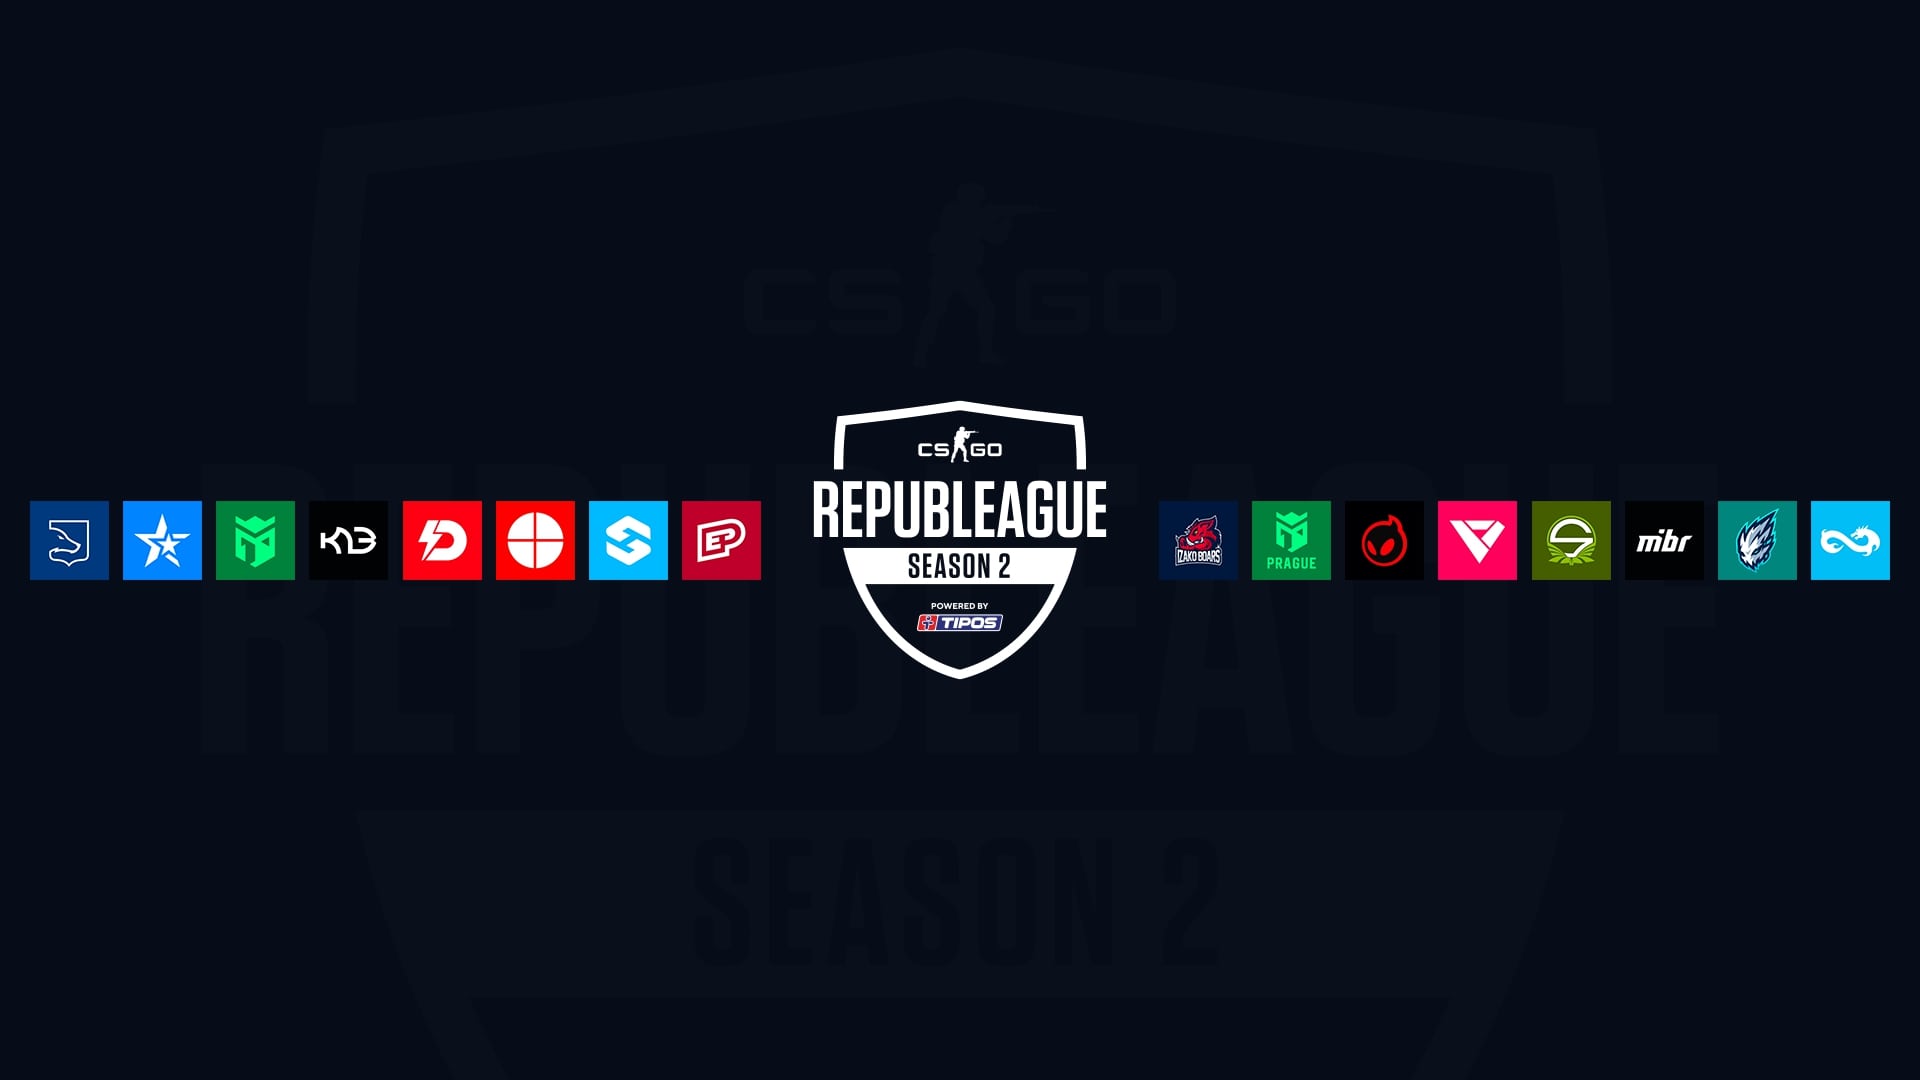 Přehled: REPUBLEAGUE S2 míří do play-off, na česko-slovenské týmy čekají světová jména